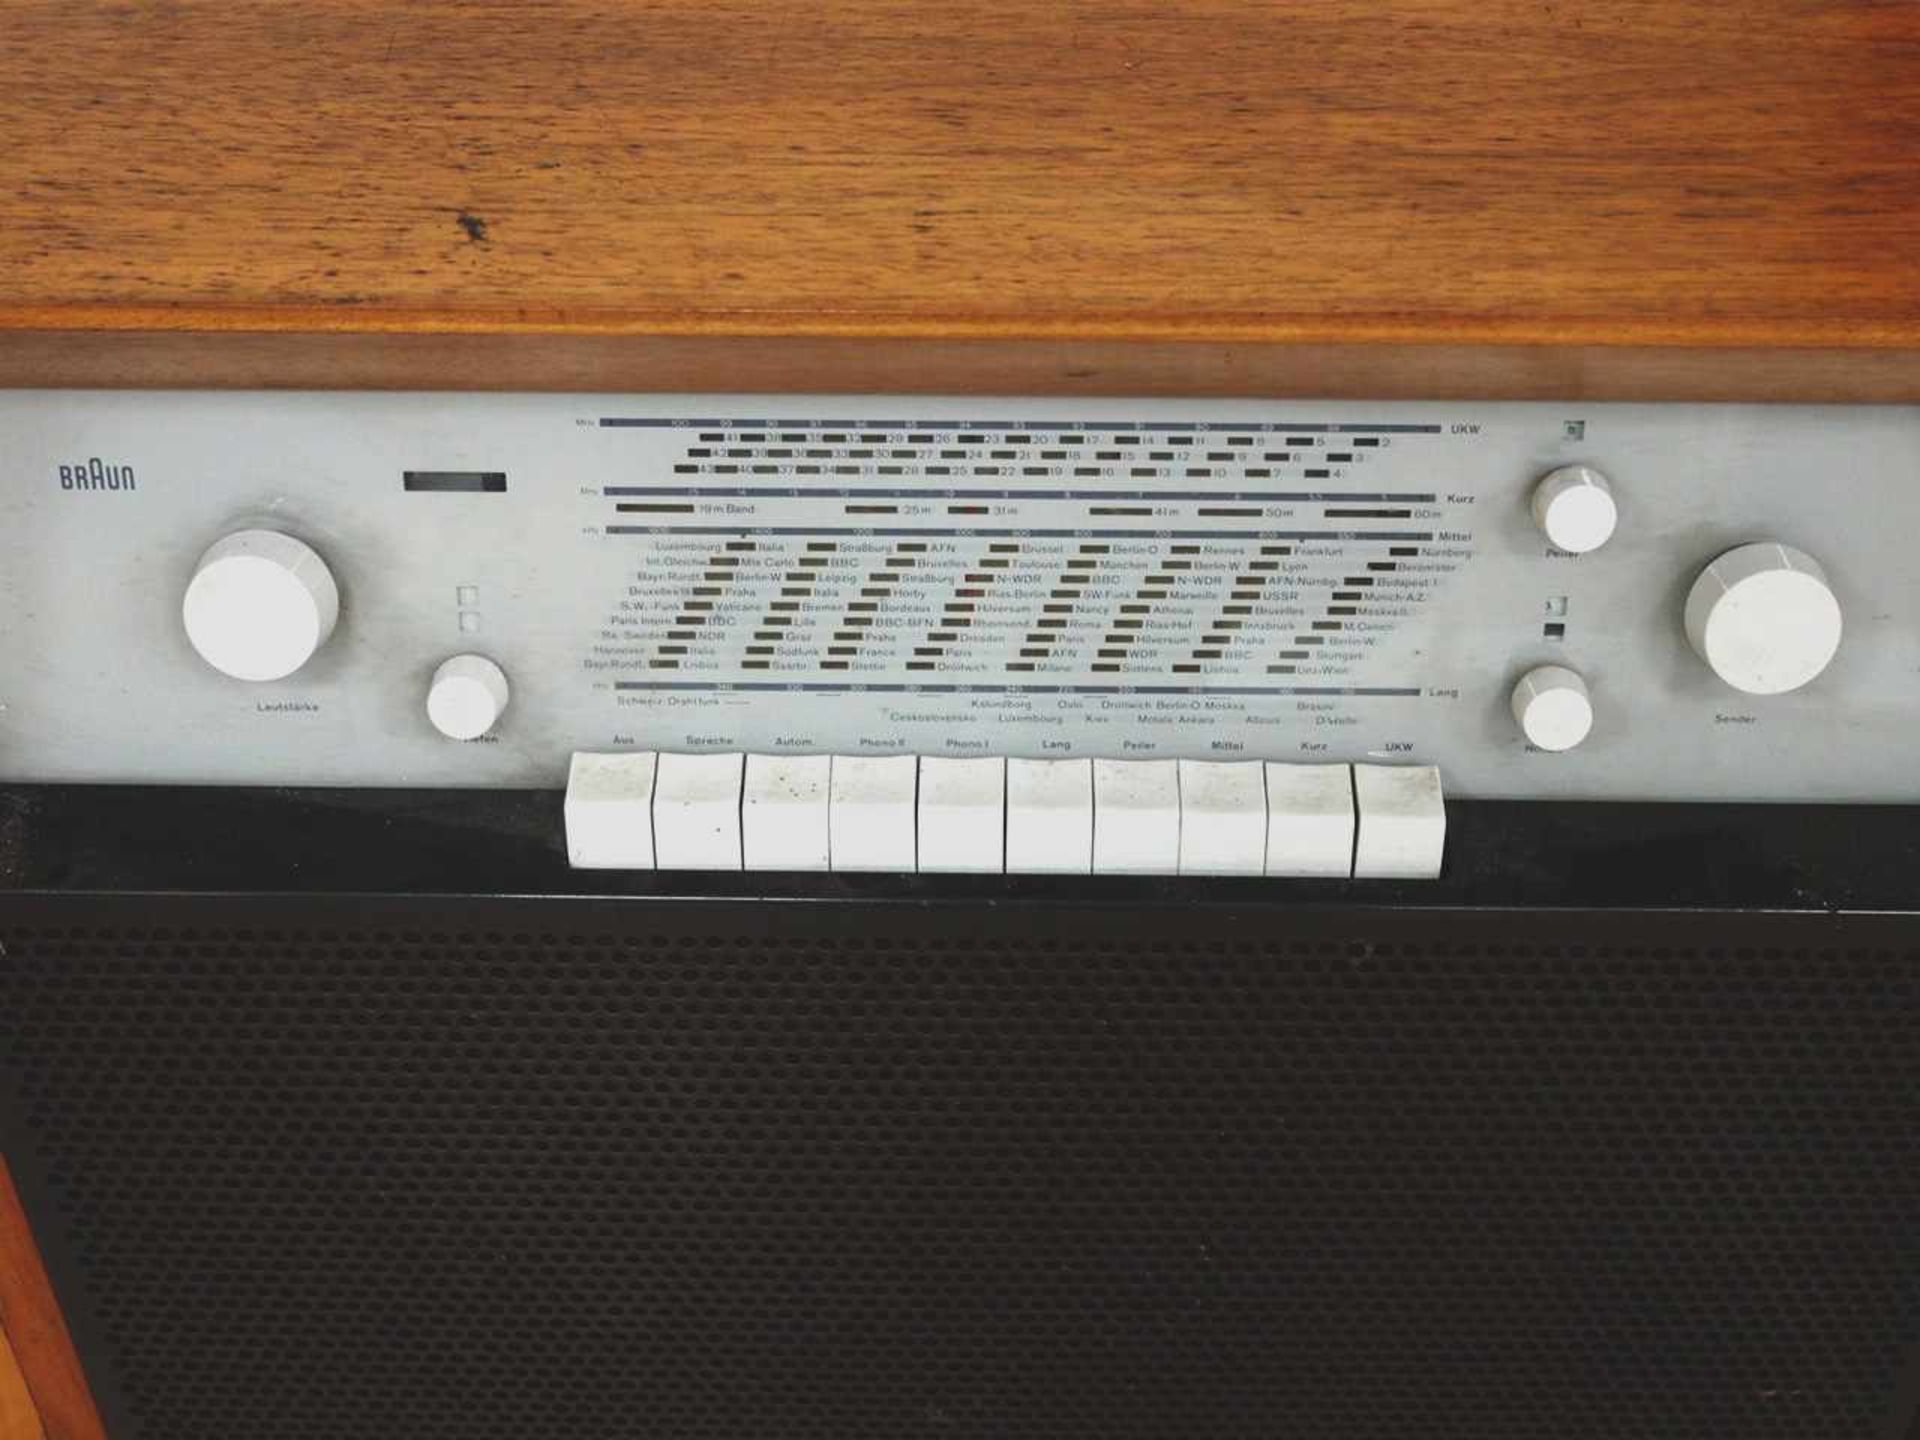 Musikschrank Braun RS11Wum 1960, schwarzes Metallgestell, furniertes Holzgehäuse, - Bild 3 aus 3